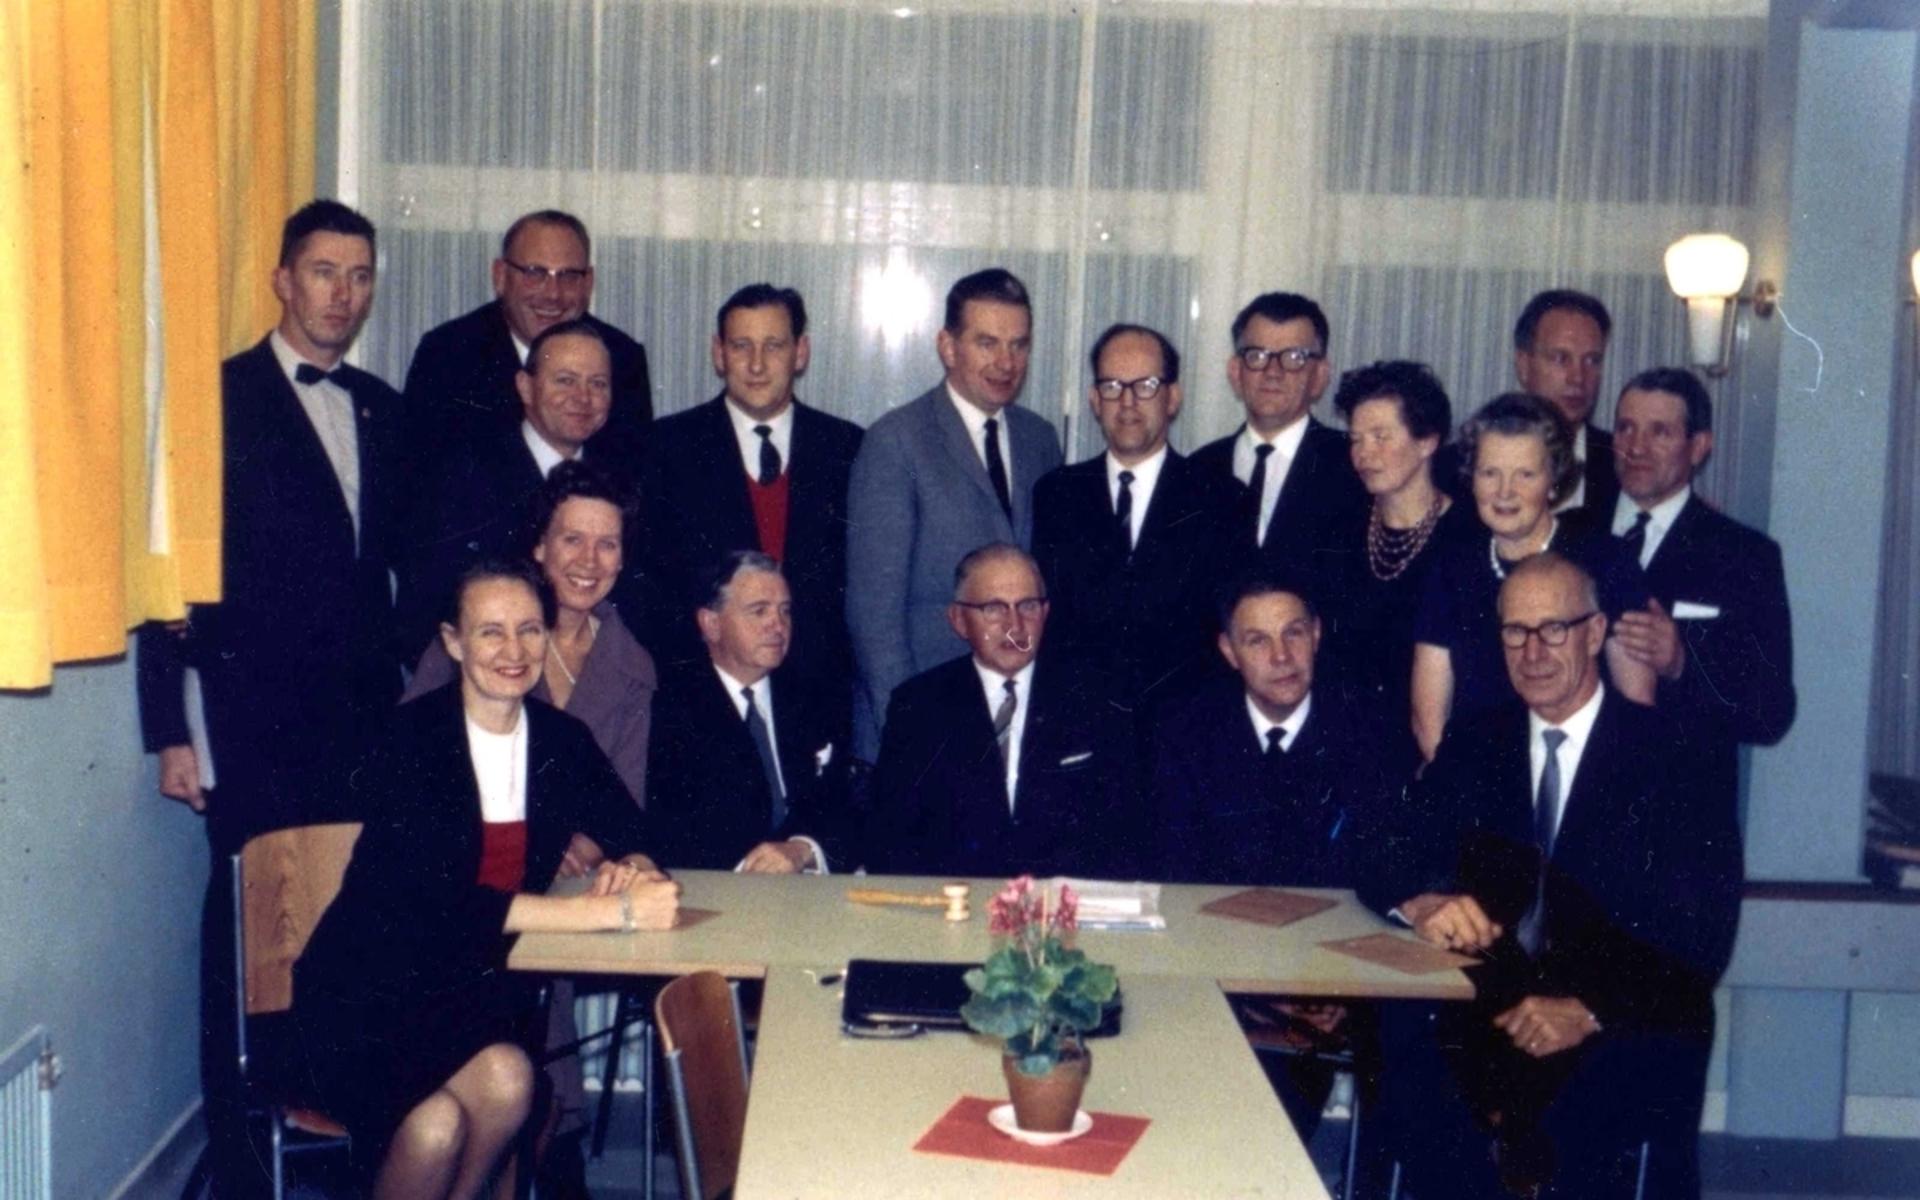 Kållereds kommunalfullmäktiges möte i matsalen 1962. 